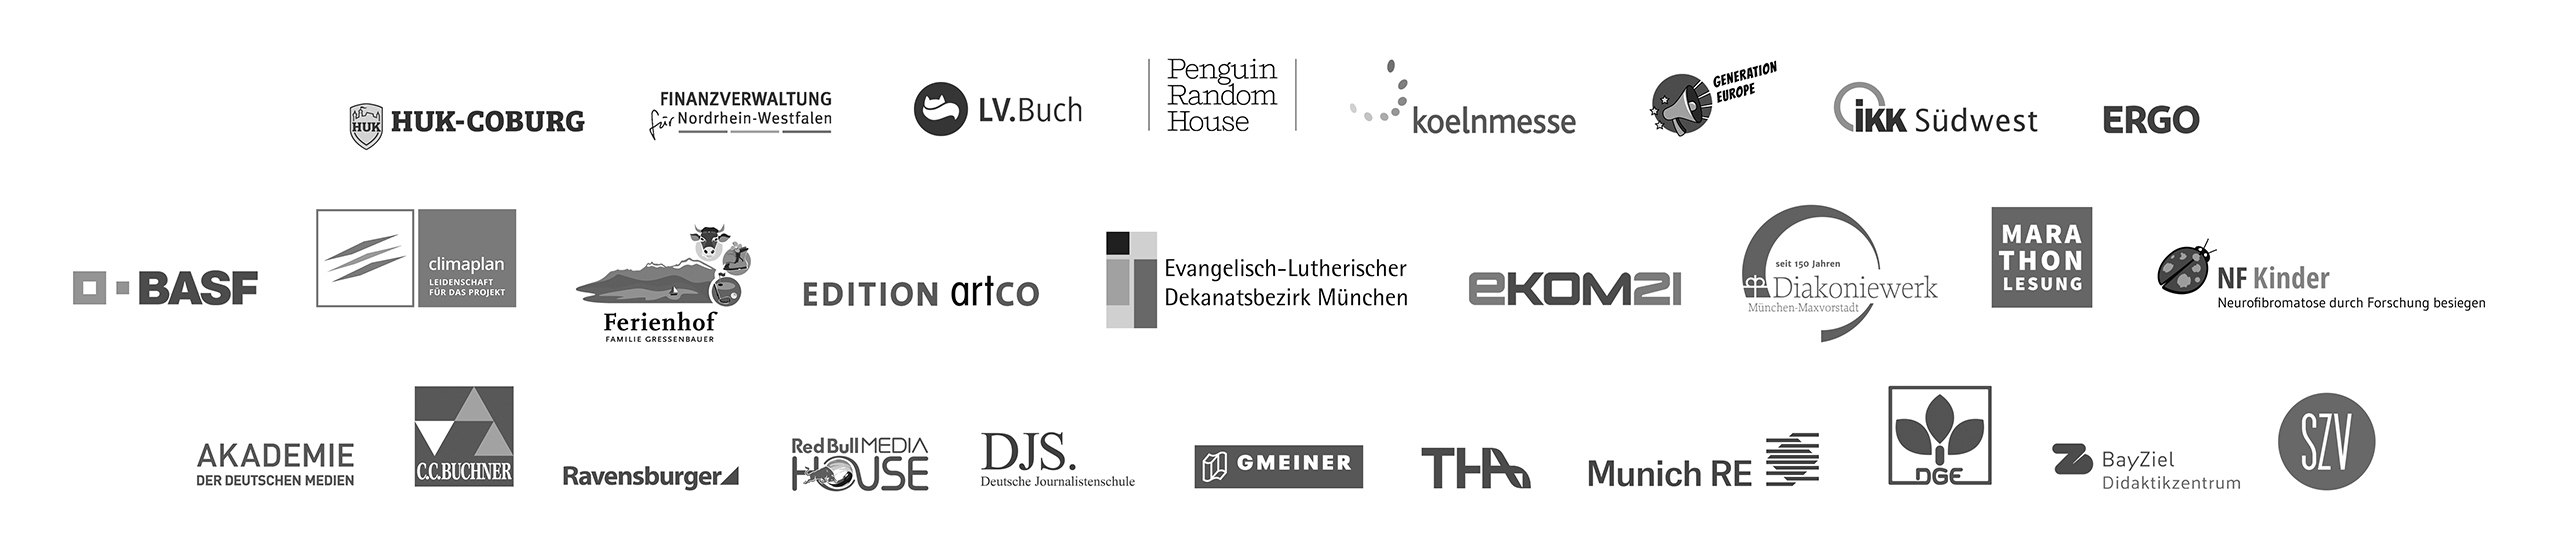 Referenzen Elisabeth Wallner Logos